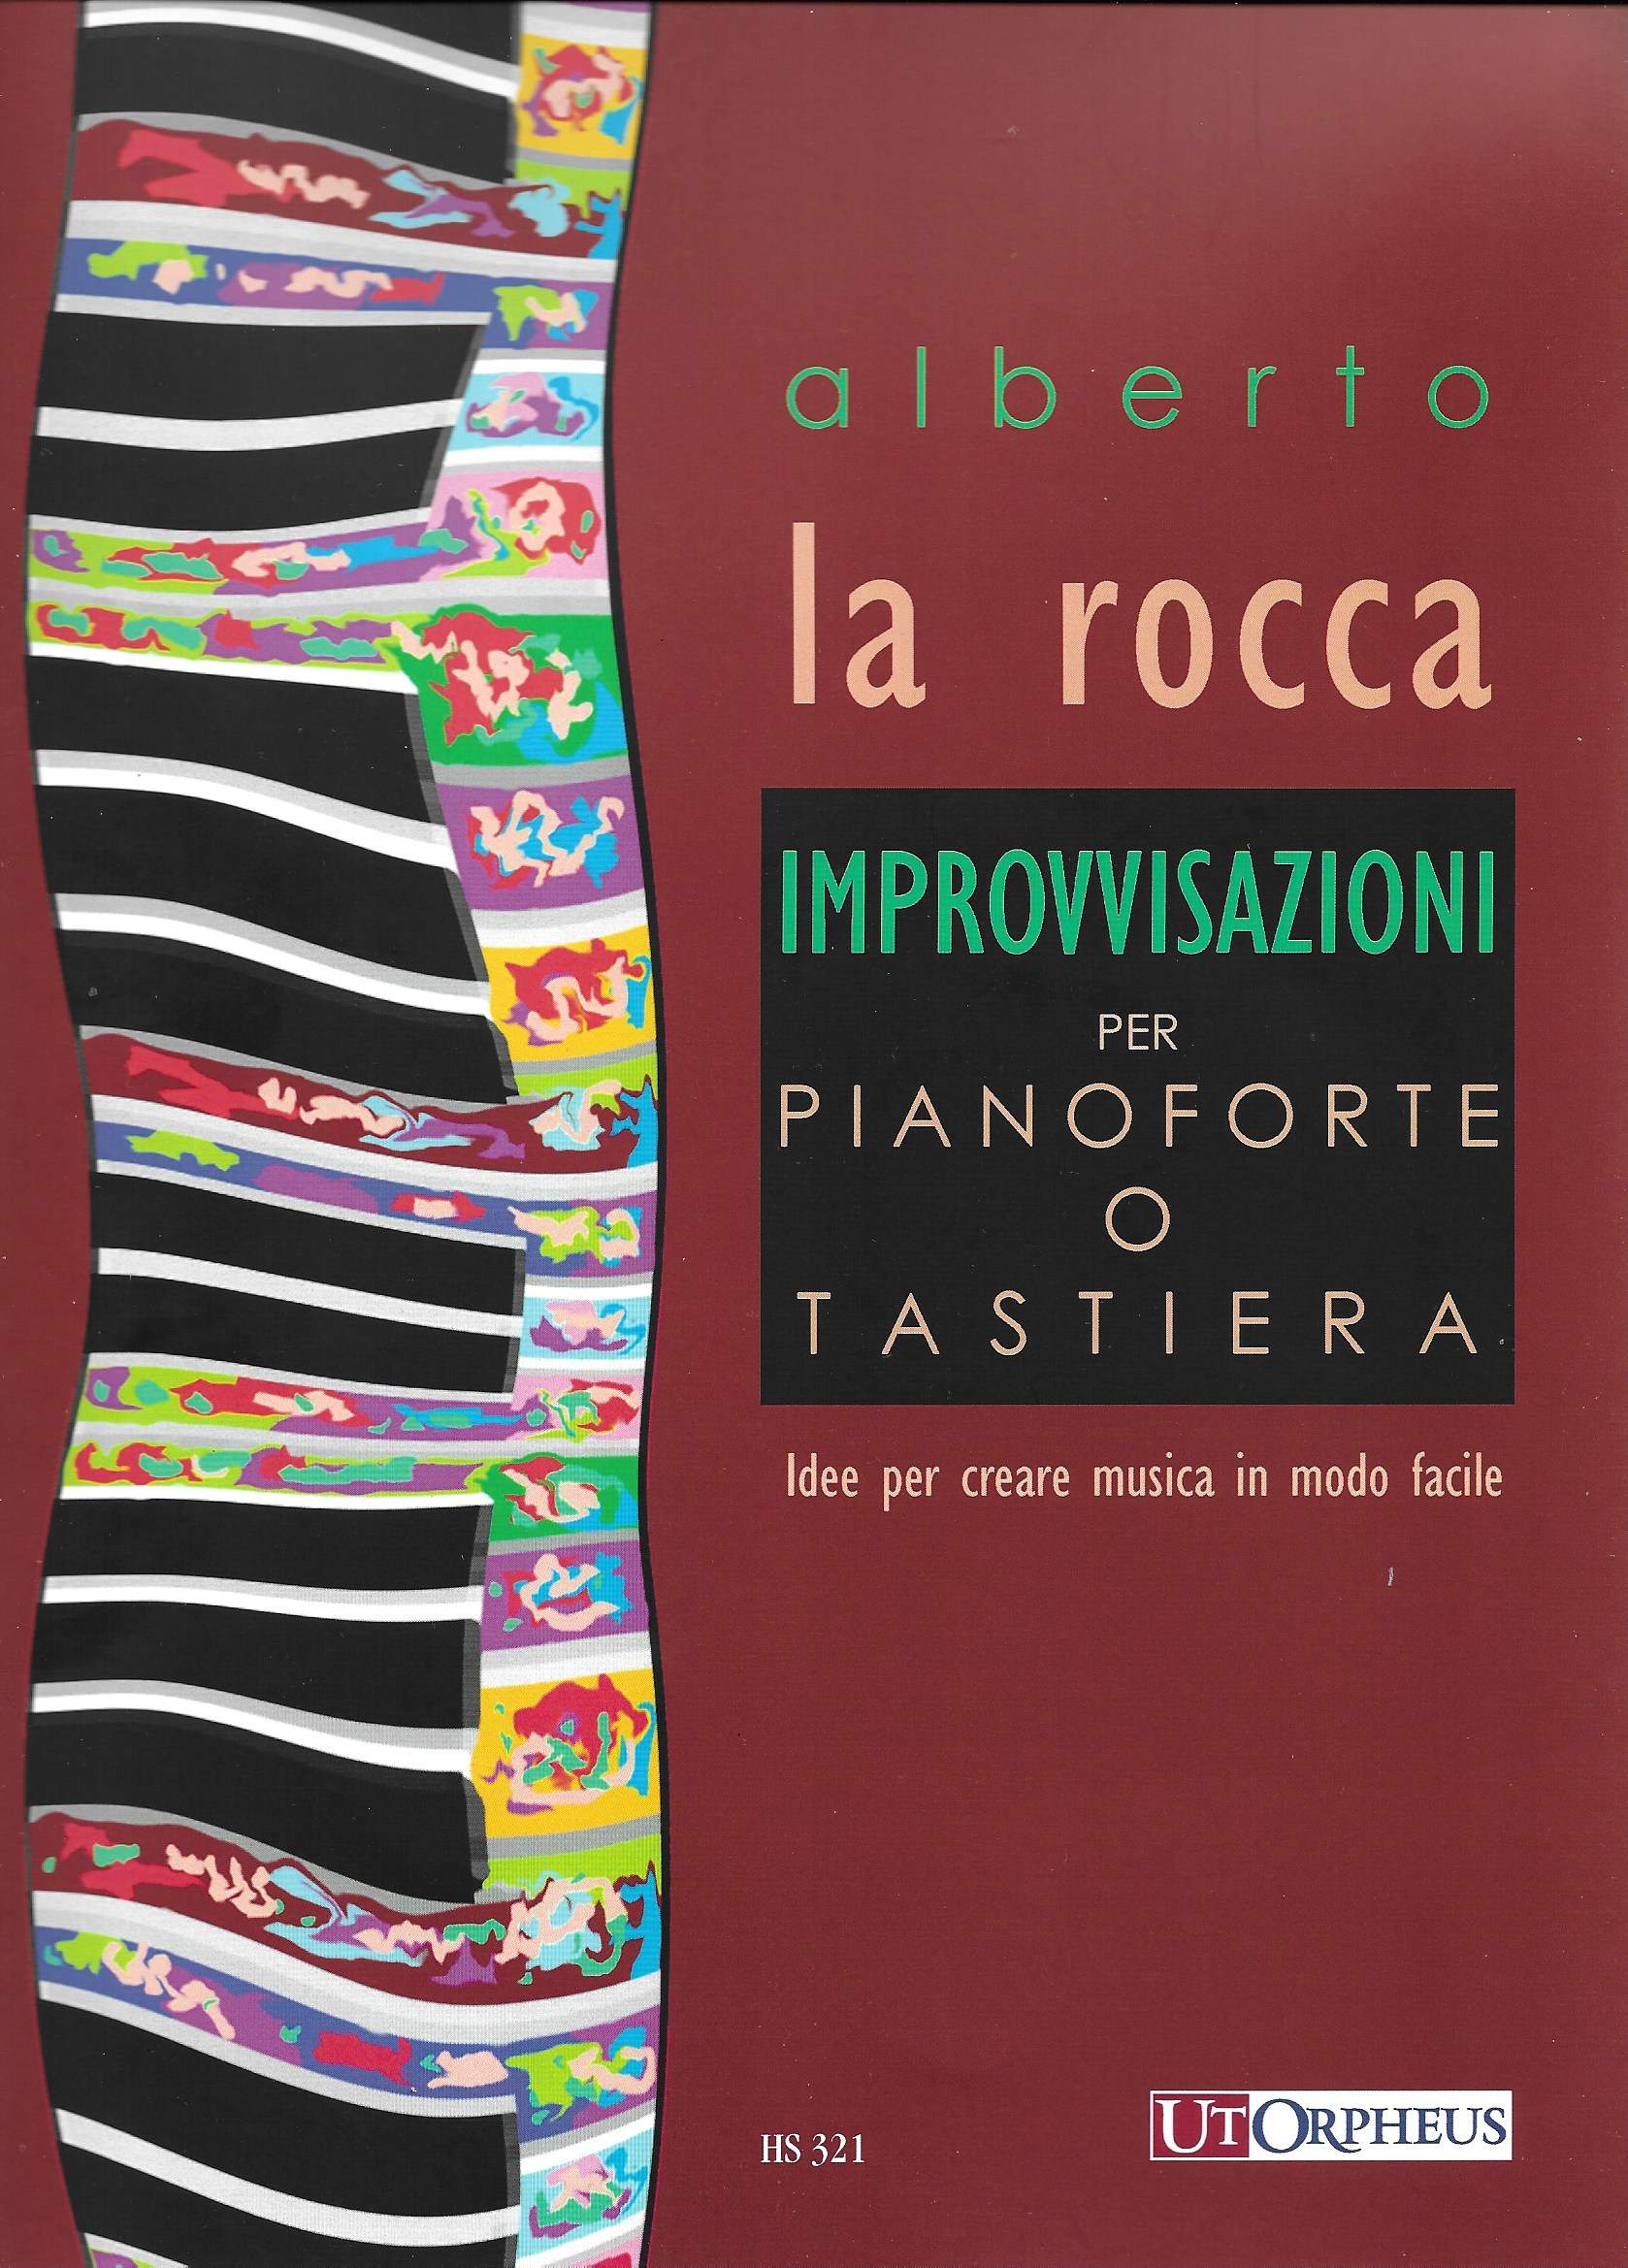 Alberto La Rocca  "Improvvisazioni" per pianoforte o tastiera